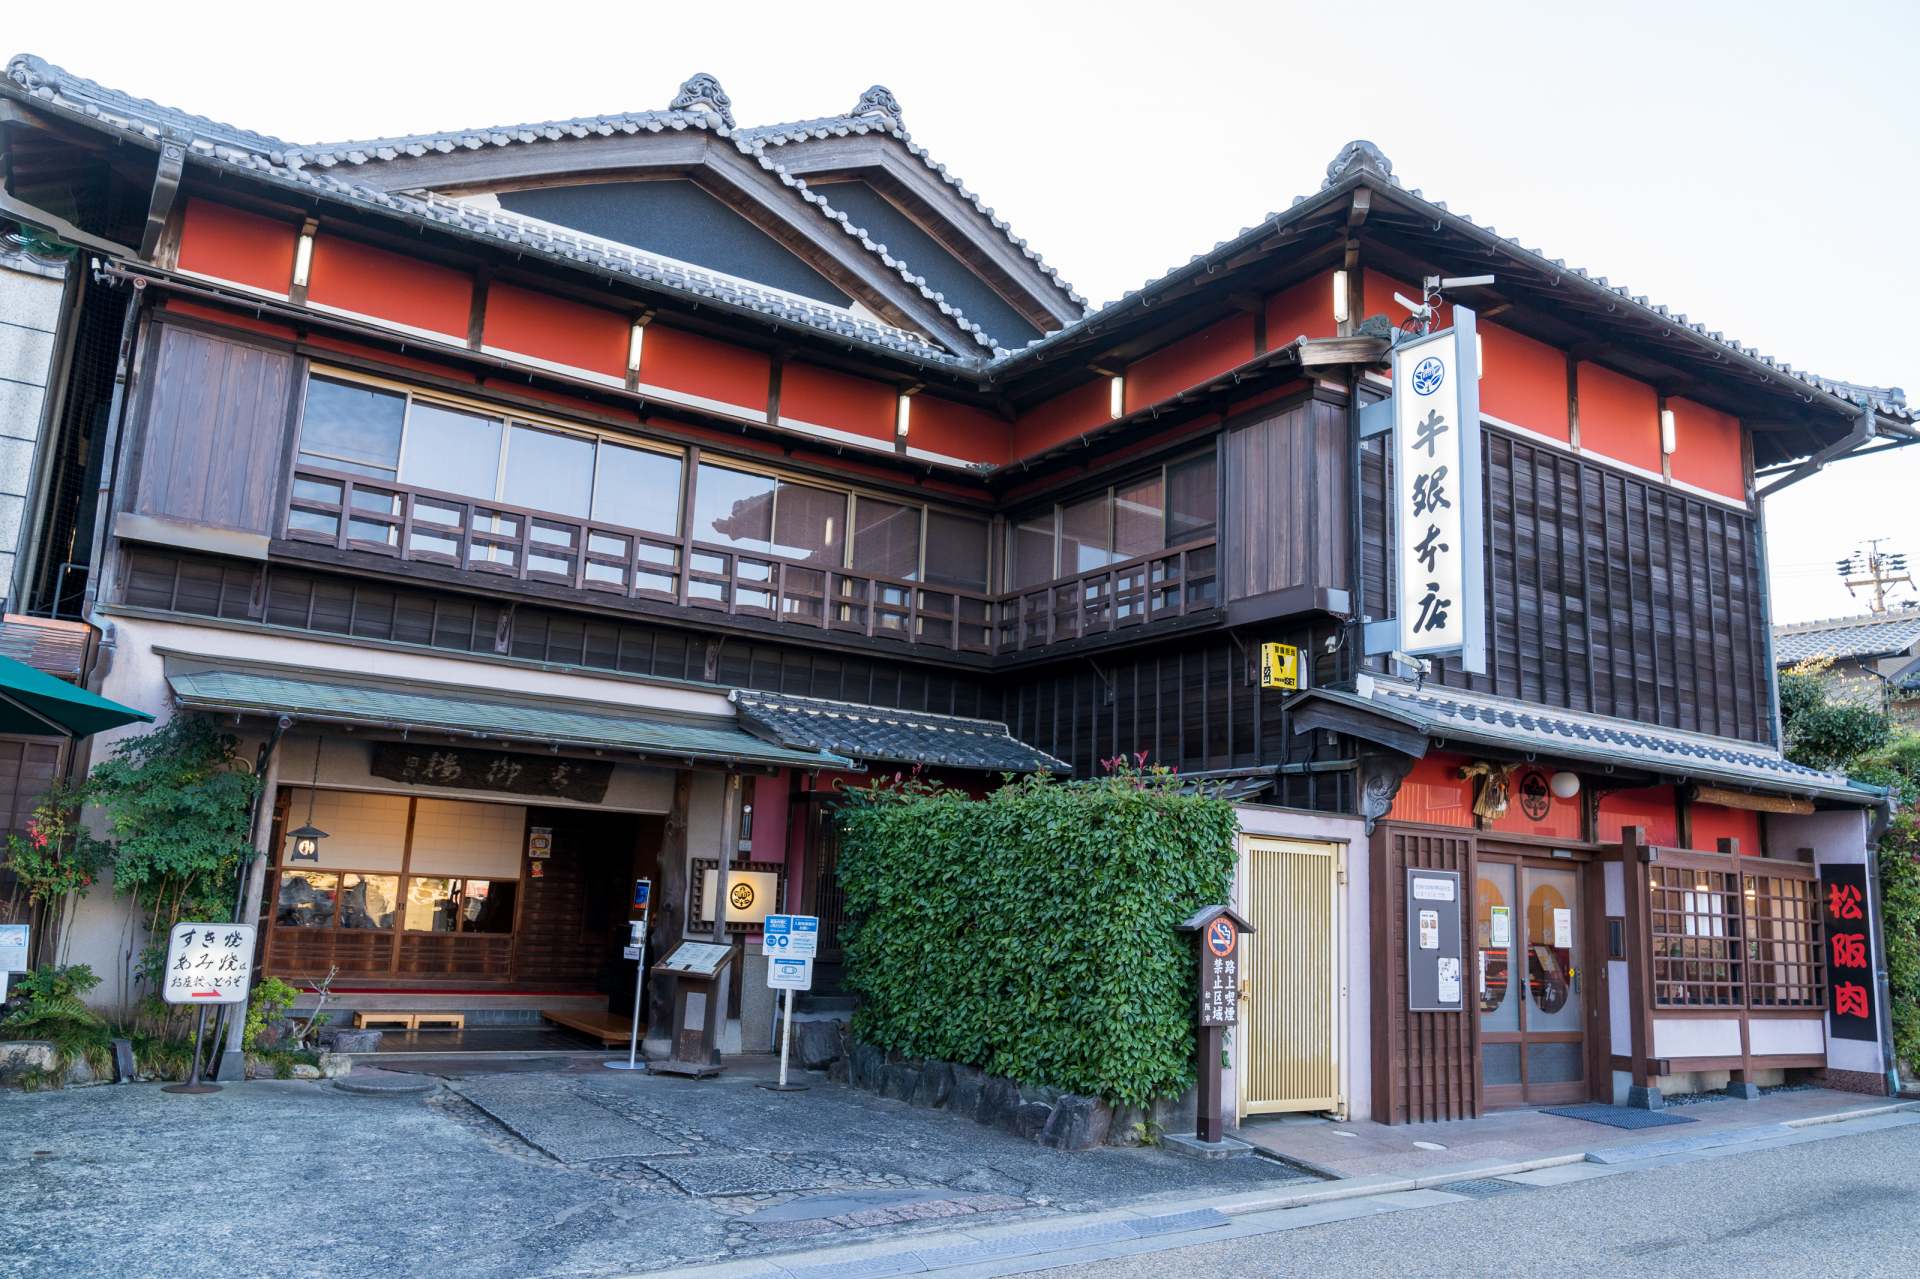 古い町並みの中でひと際目を引く、重厚な日本建築の佇まい